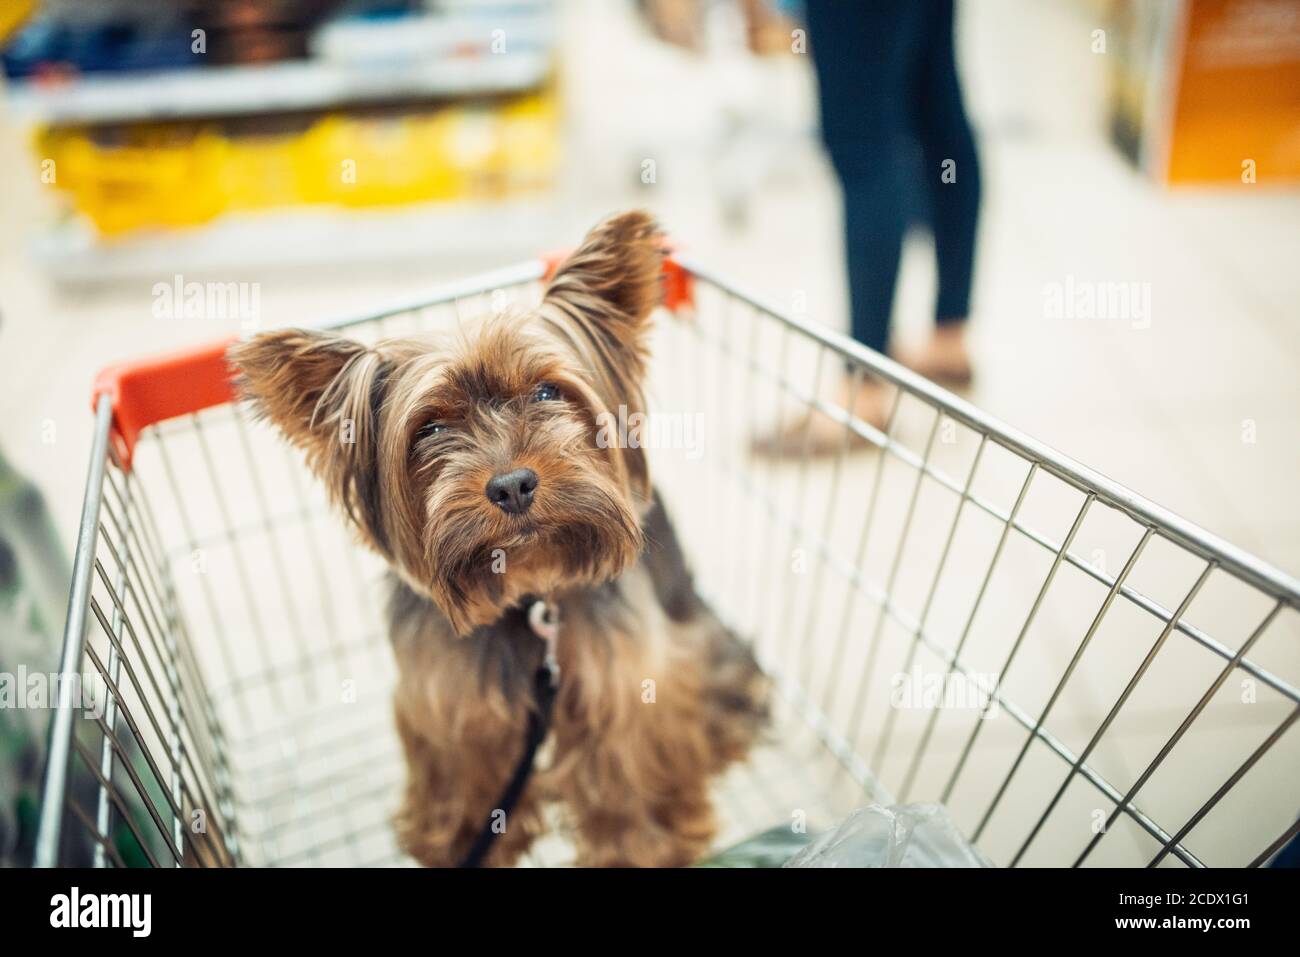 Nette kleine Welpen Hund sitzt in einem Warenkorb auf verschwommene Shop Mall Hintergrund mit Menschen. Selektive Fokus Makro mit sh Stockfoto